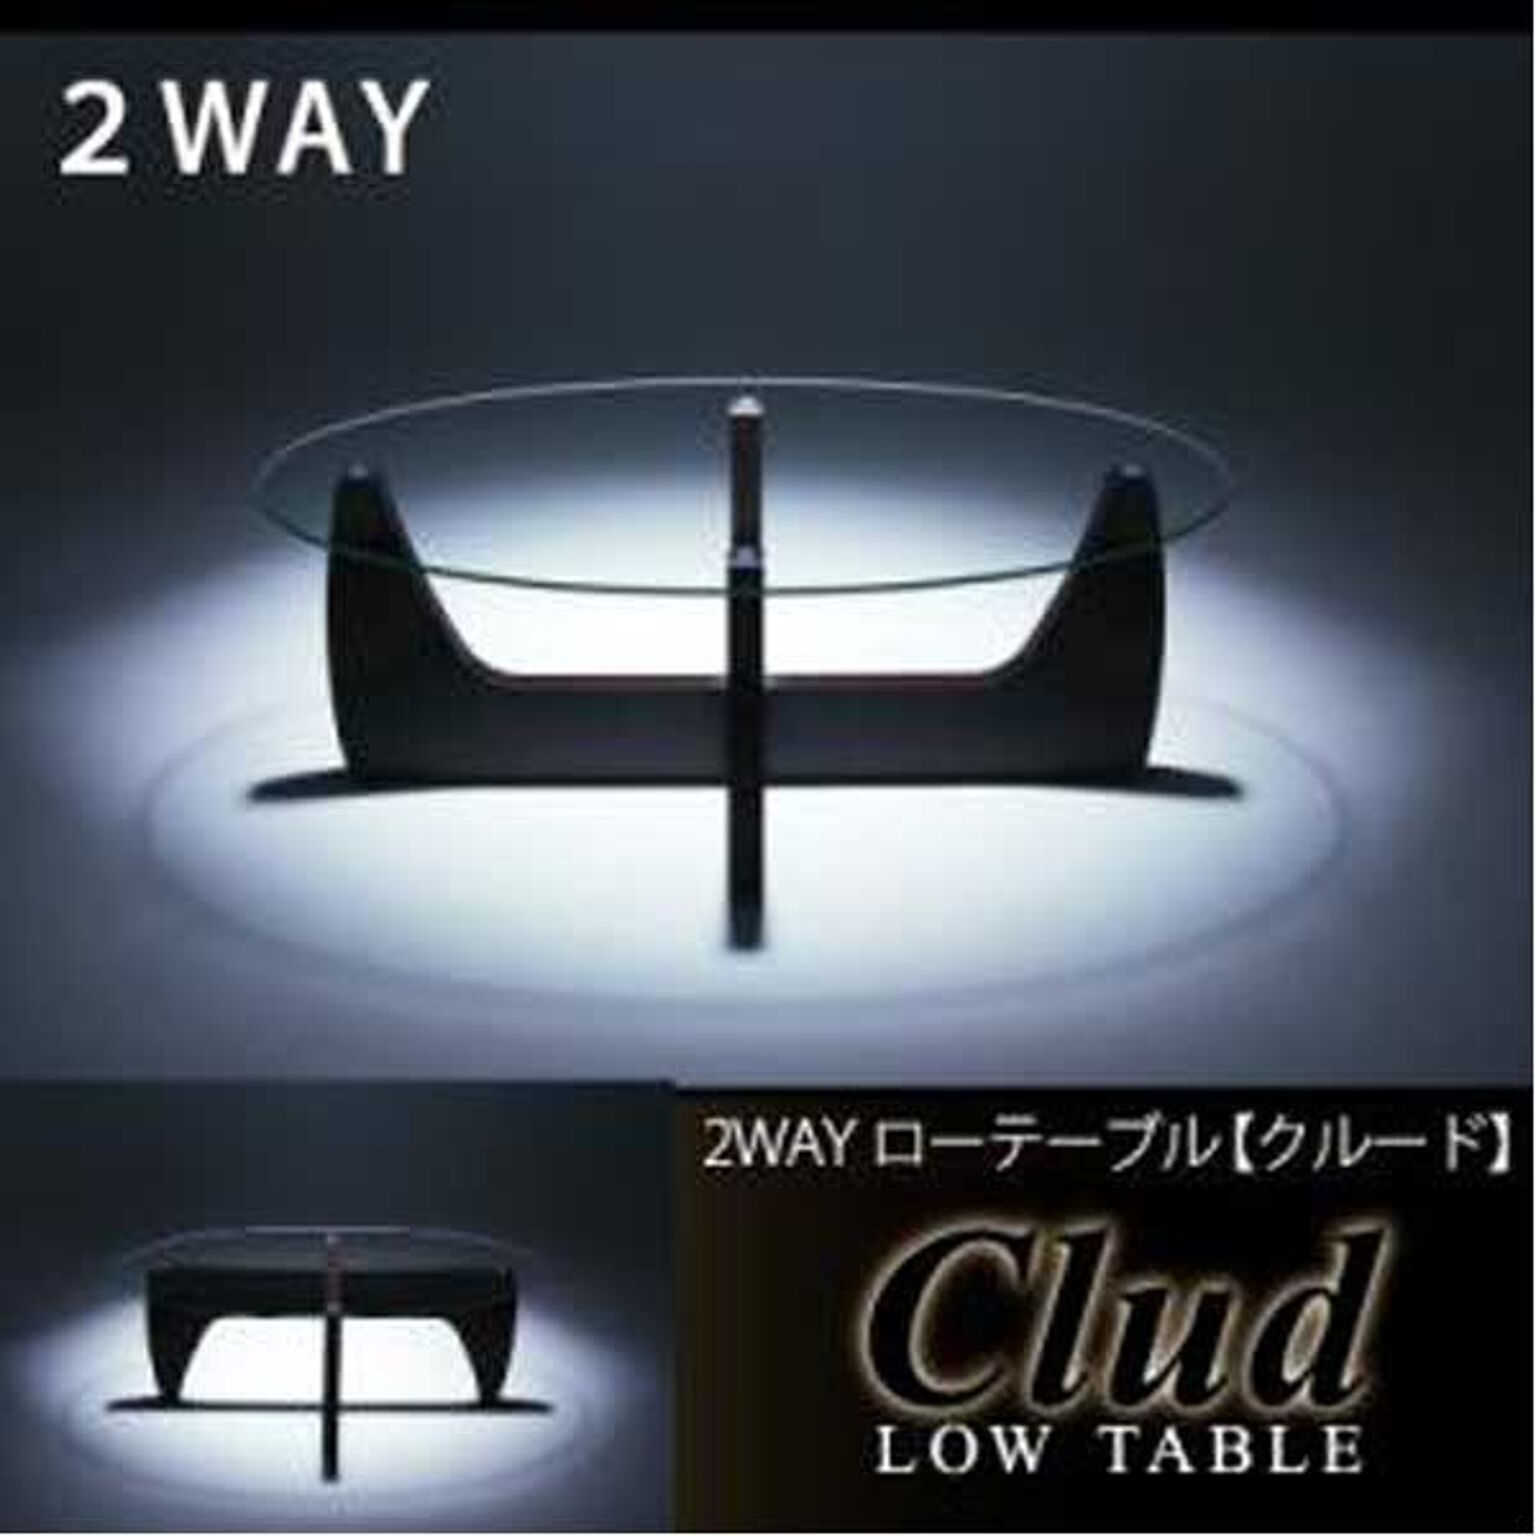 2WAYローテーブル【Clud】クルード